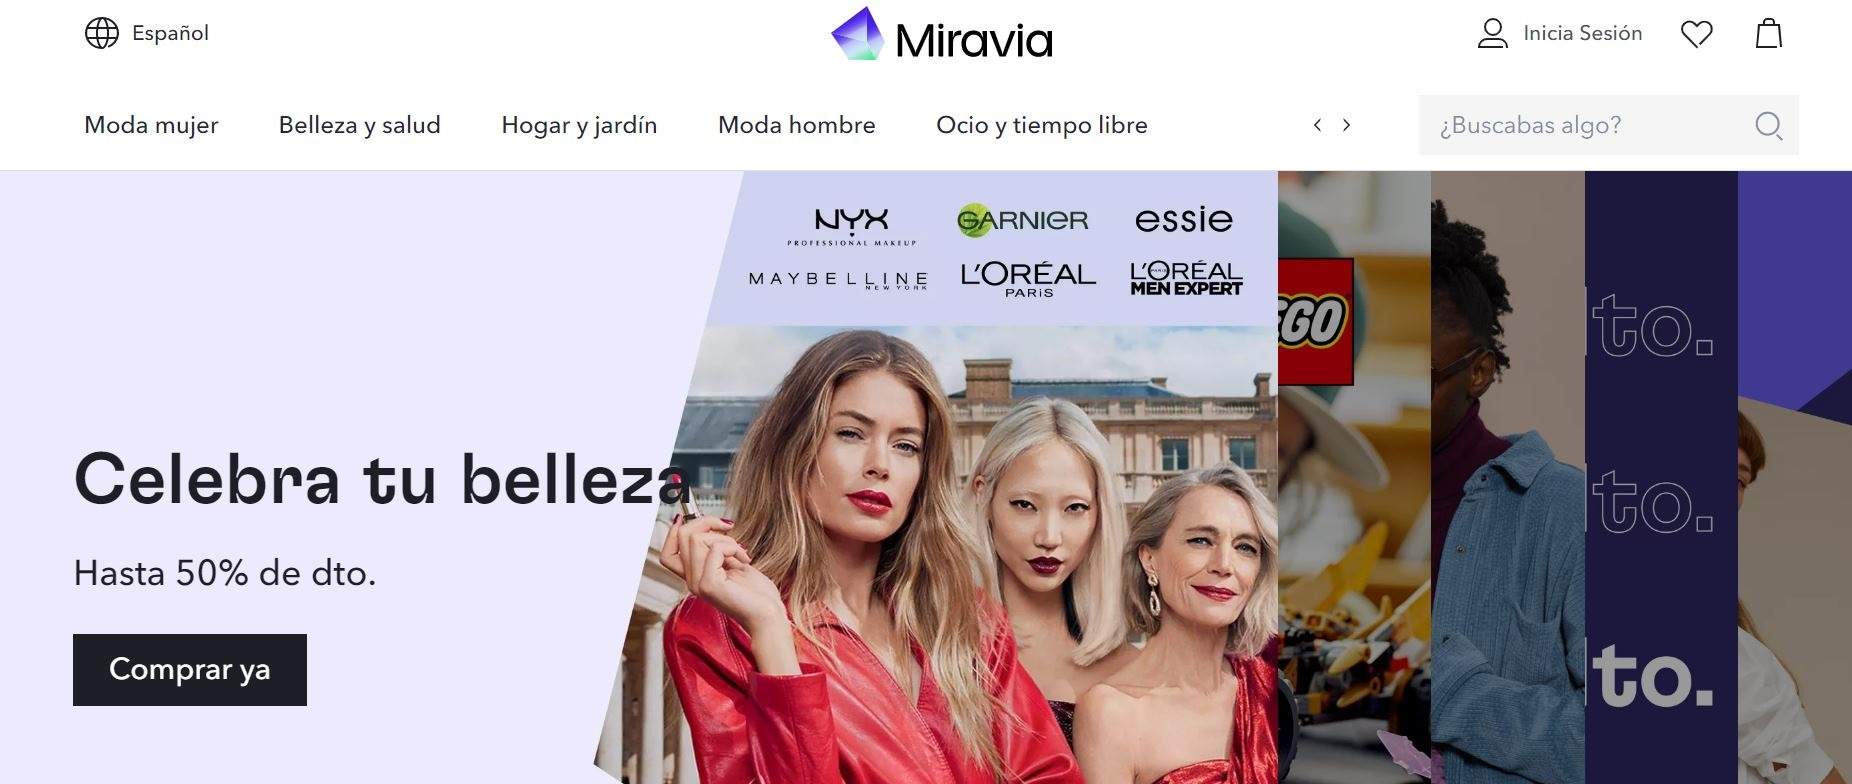 Alibaba lanza Miravia en España, un nuevo 'marketplace' de moda, belleza y estilo de vida